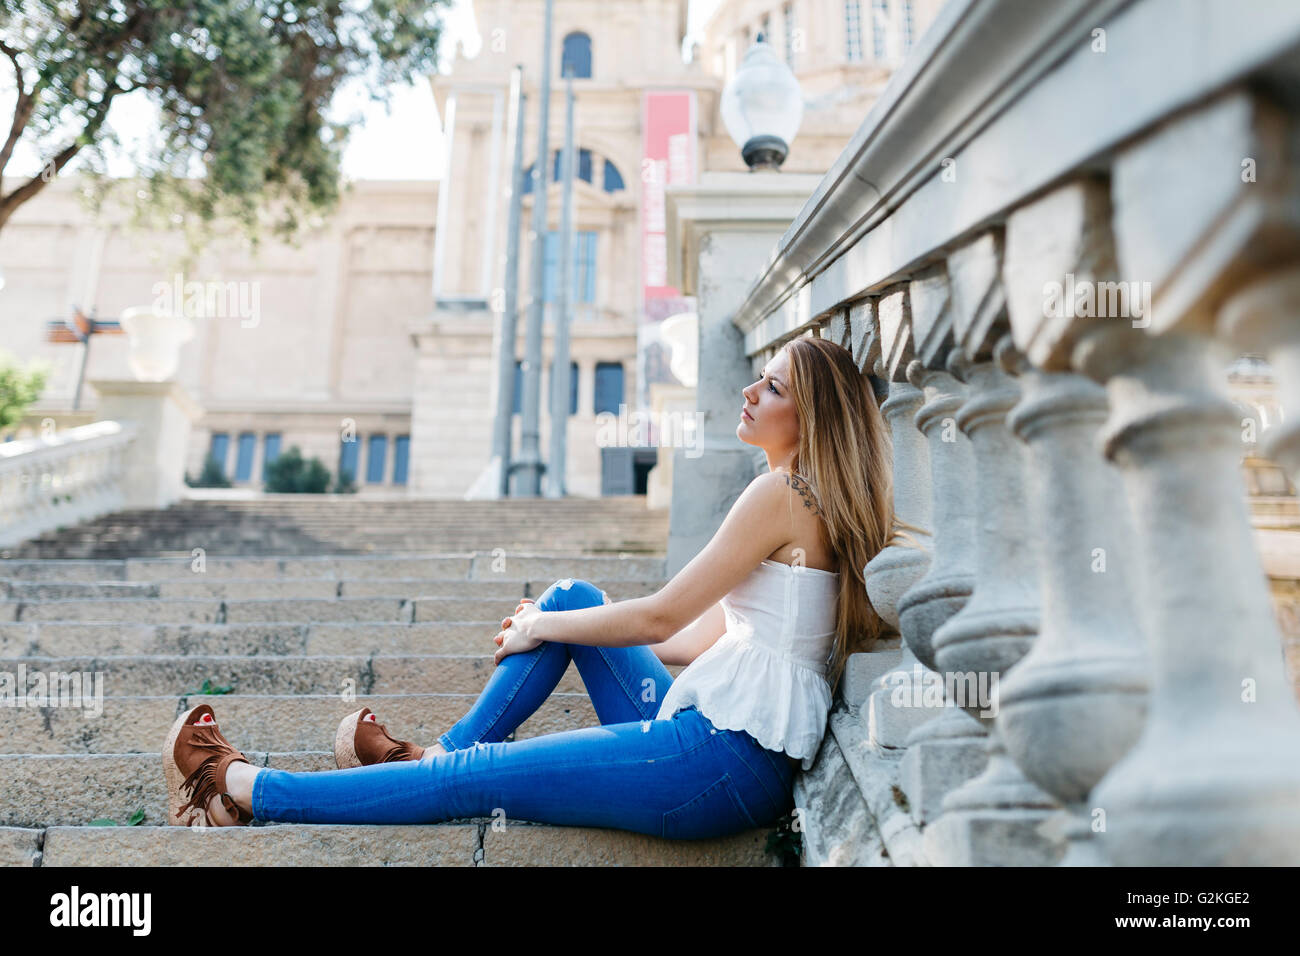 Espagne, Barcelone, jeune femme en faisant une pause, assis sur des escaliers Banque D'Images